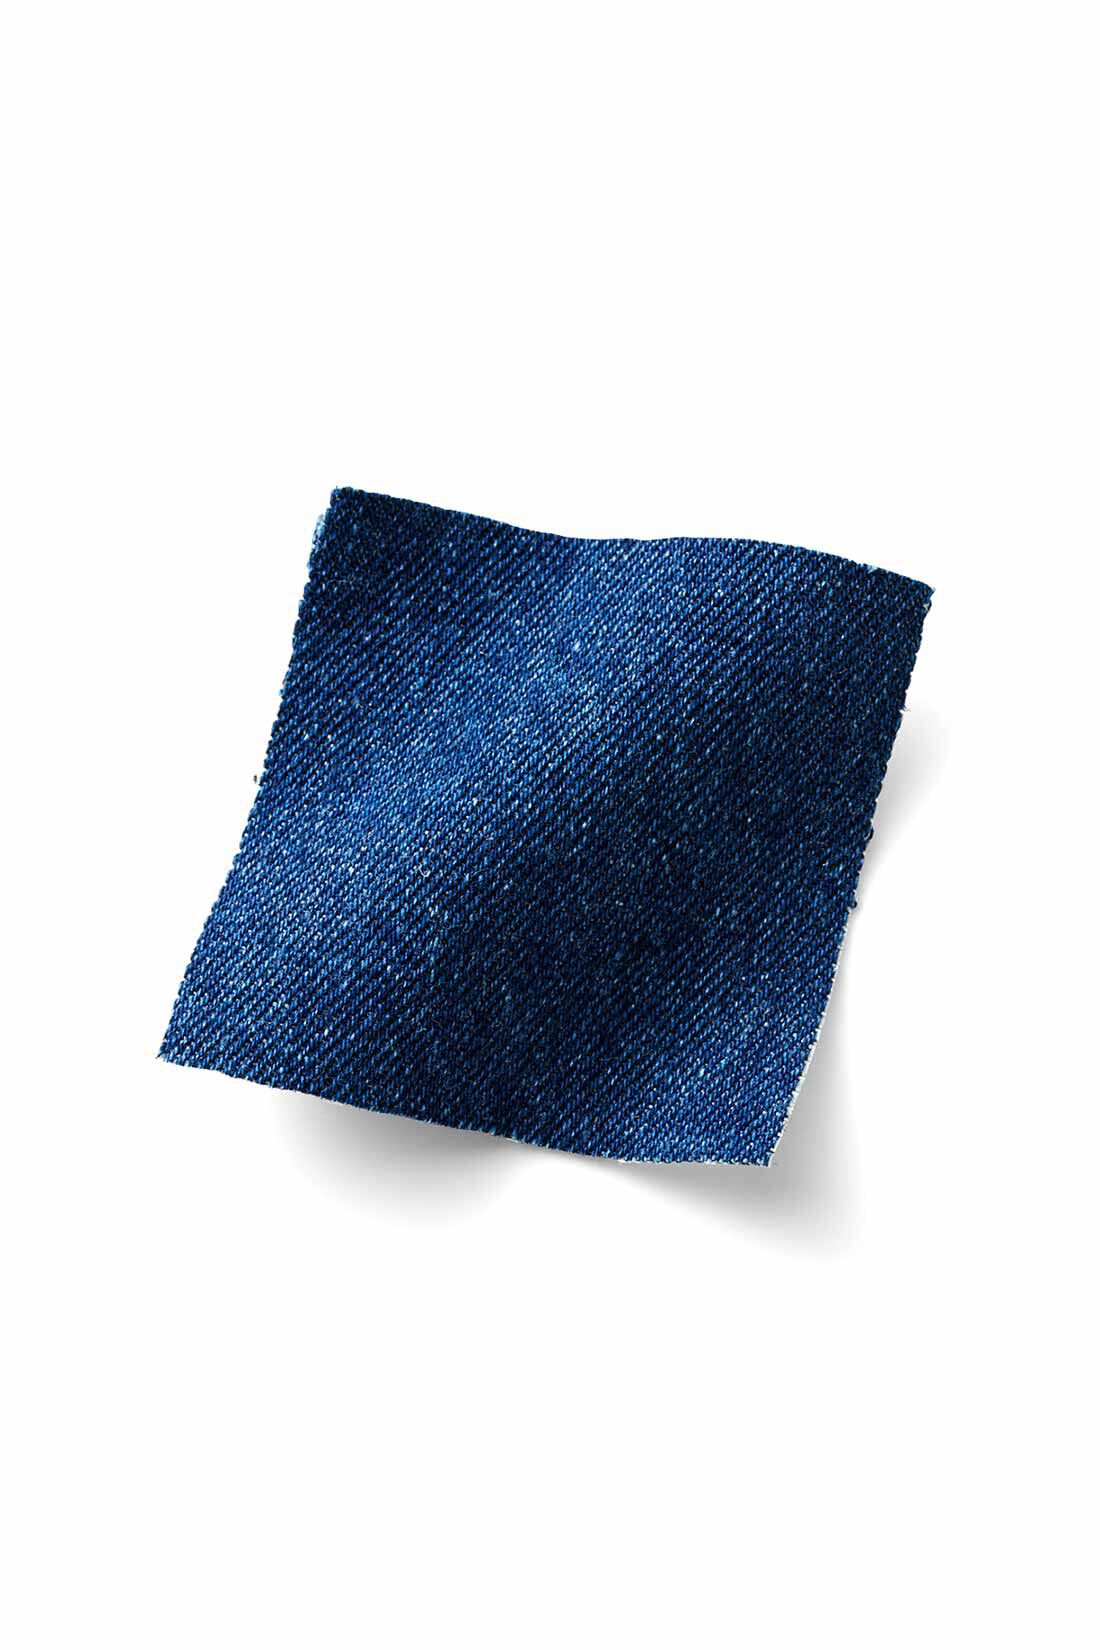 IEDIT|IEDIT[イディット]　福田麻琴さんコラボ 大人上品に着こなせる ボリュームスリーブデニムブラウス〈ブルー〉|ごわつき感のない適度な厚みの8.5ライトオンスデニムに洗いをかけた、こだわりのミドルブルー。